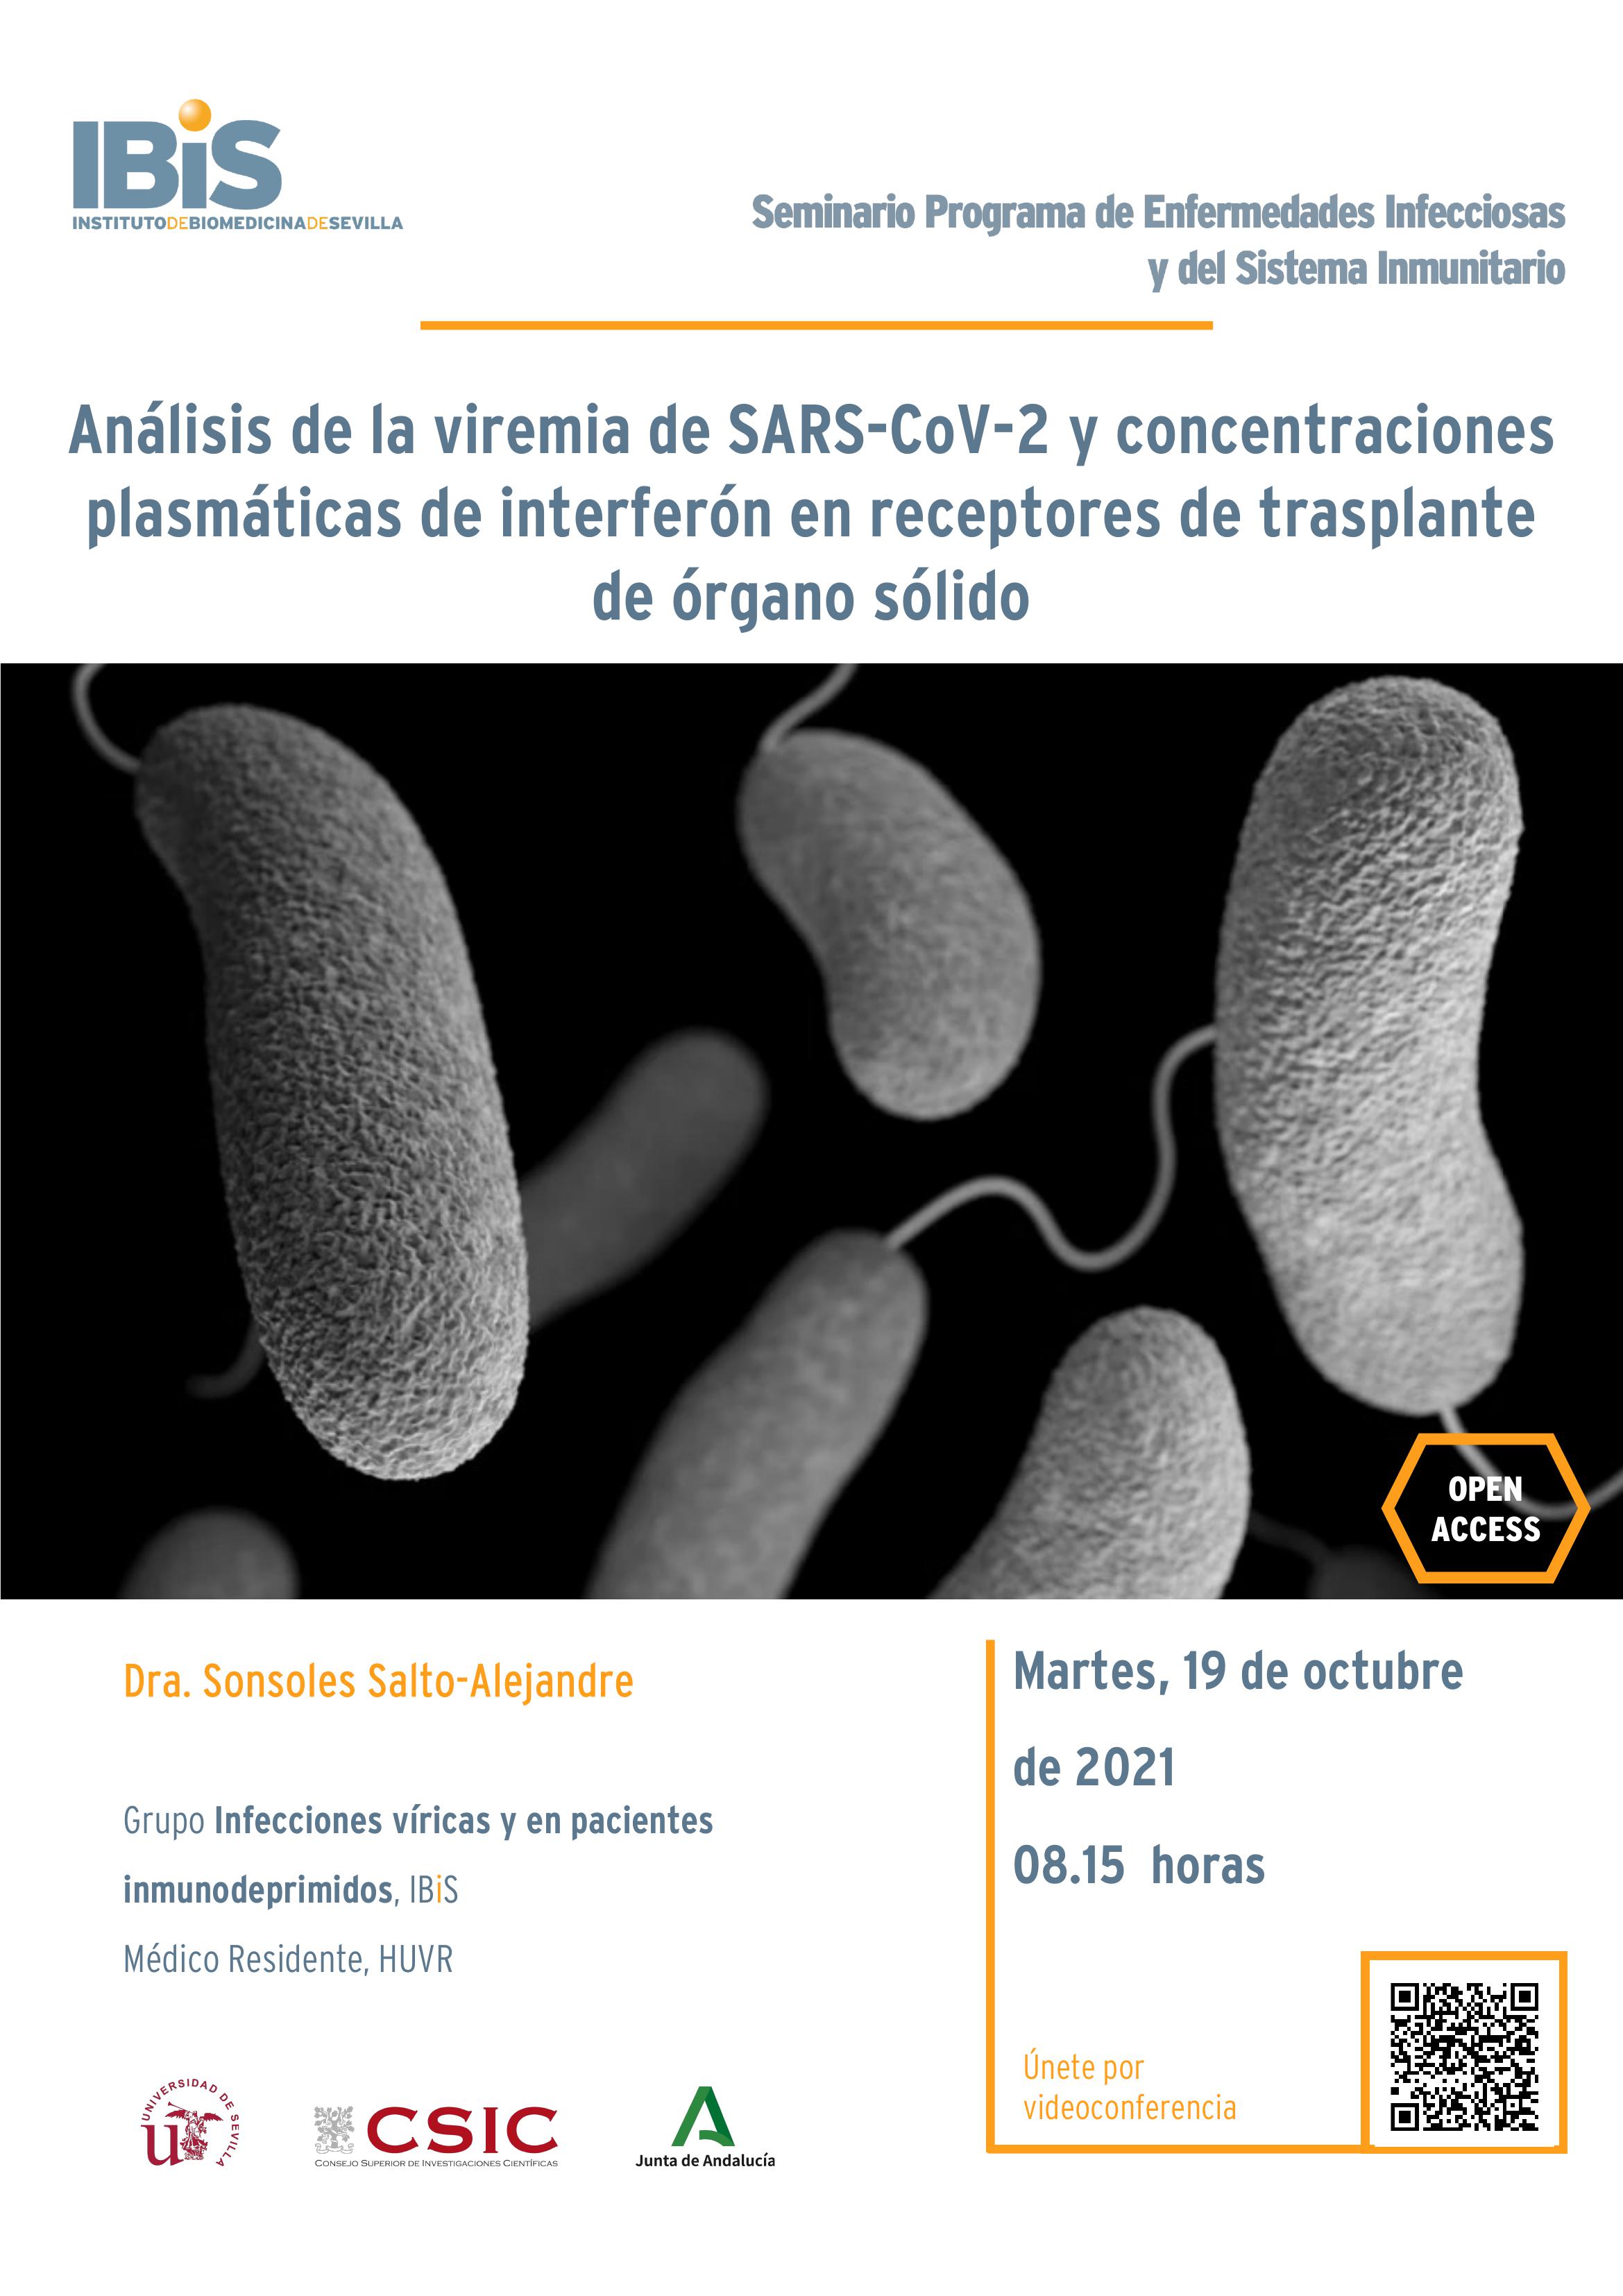 Poster: Análisis de la viremia de SARS-CoV-2 y concentraciones plasmáticas de interferón en receptores de trasplante de órgano sólido